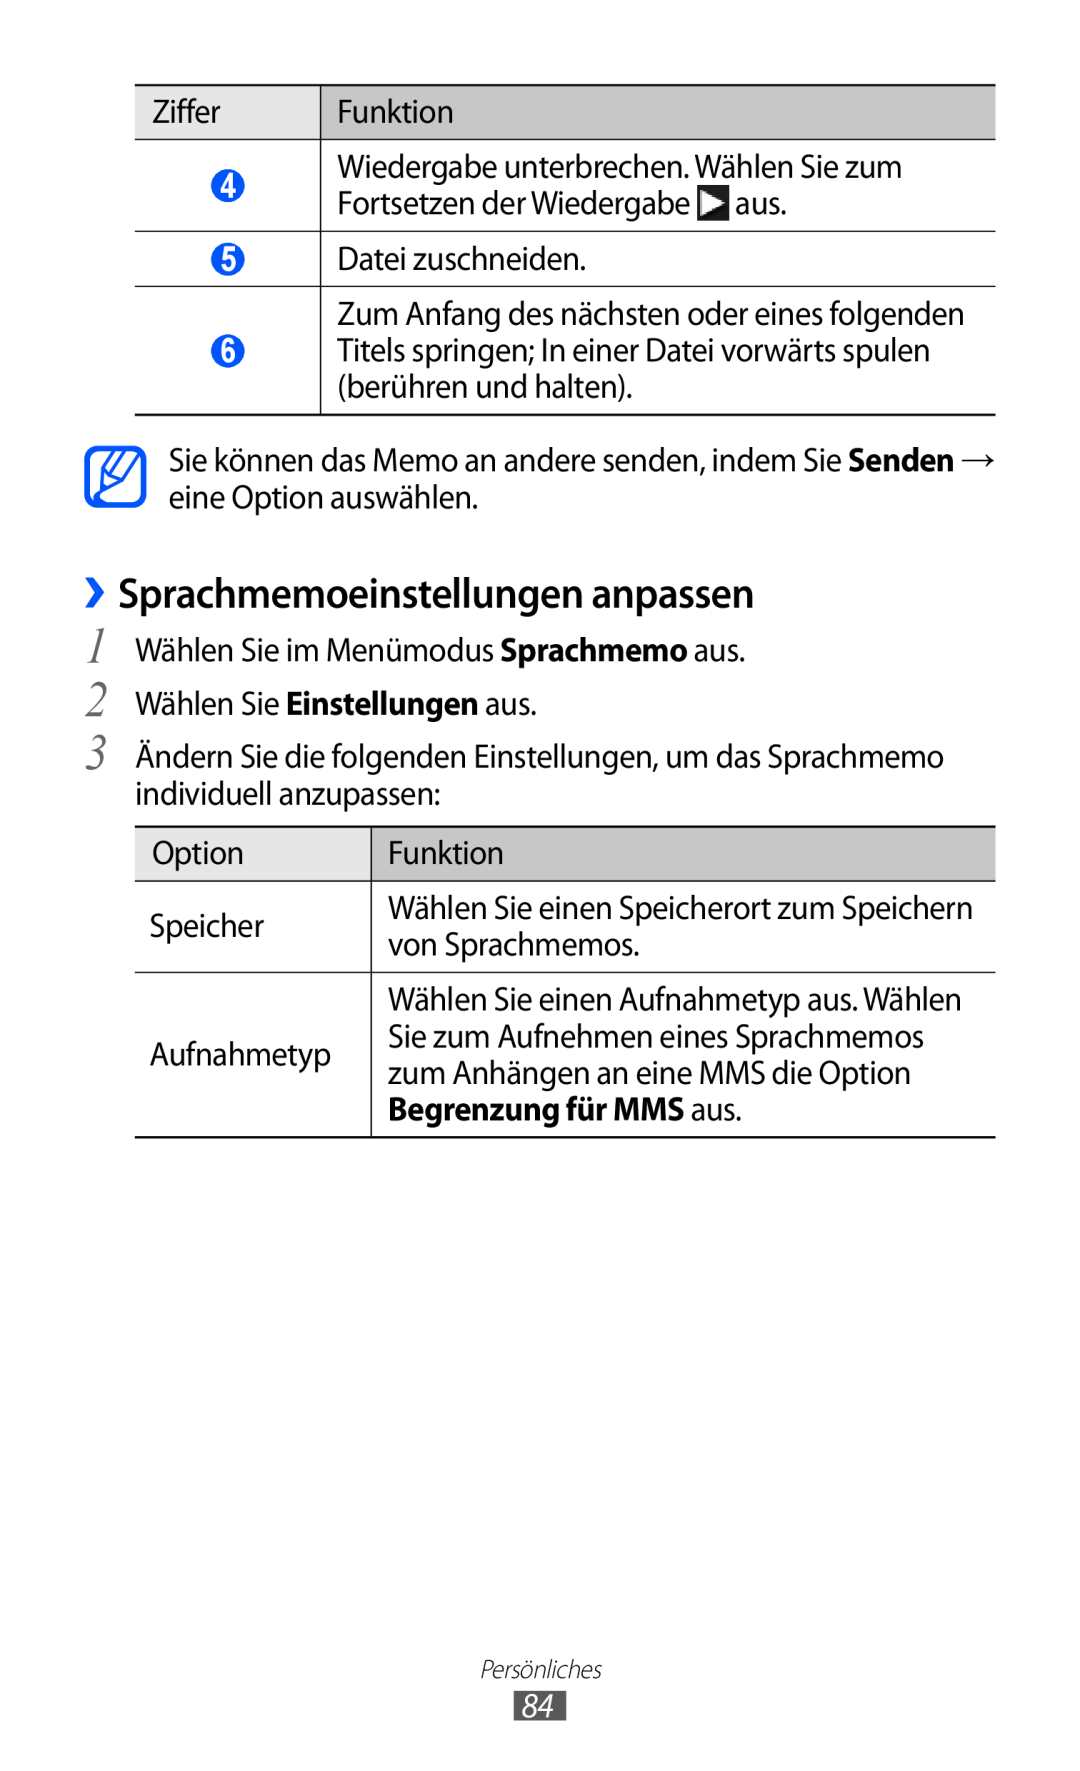 Samsung GT-S8600HKAVD2, GT-S8600HKAVIA, GT-S8600HKATPL manual ››Sprachmemoeinstellungen anpassen, Begrenzung für MMS aus 